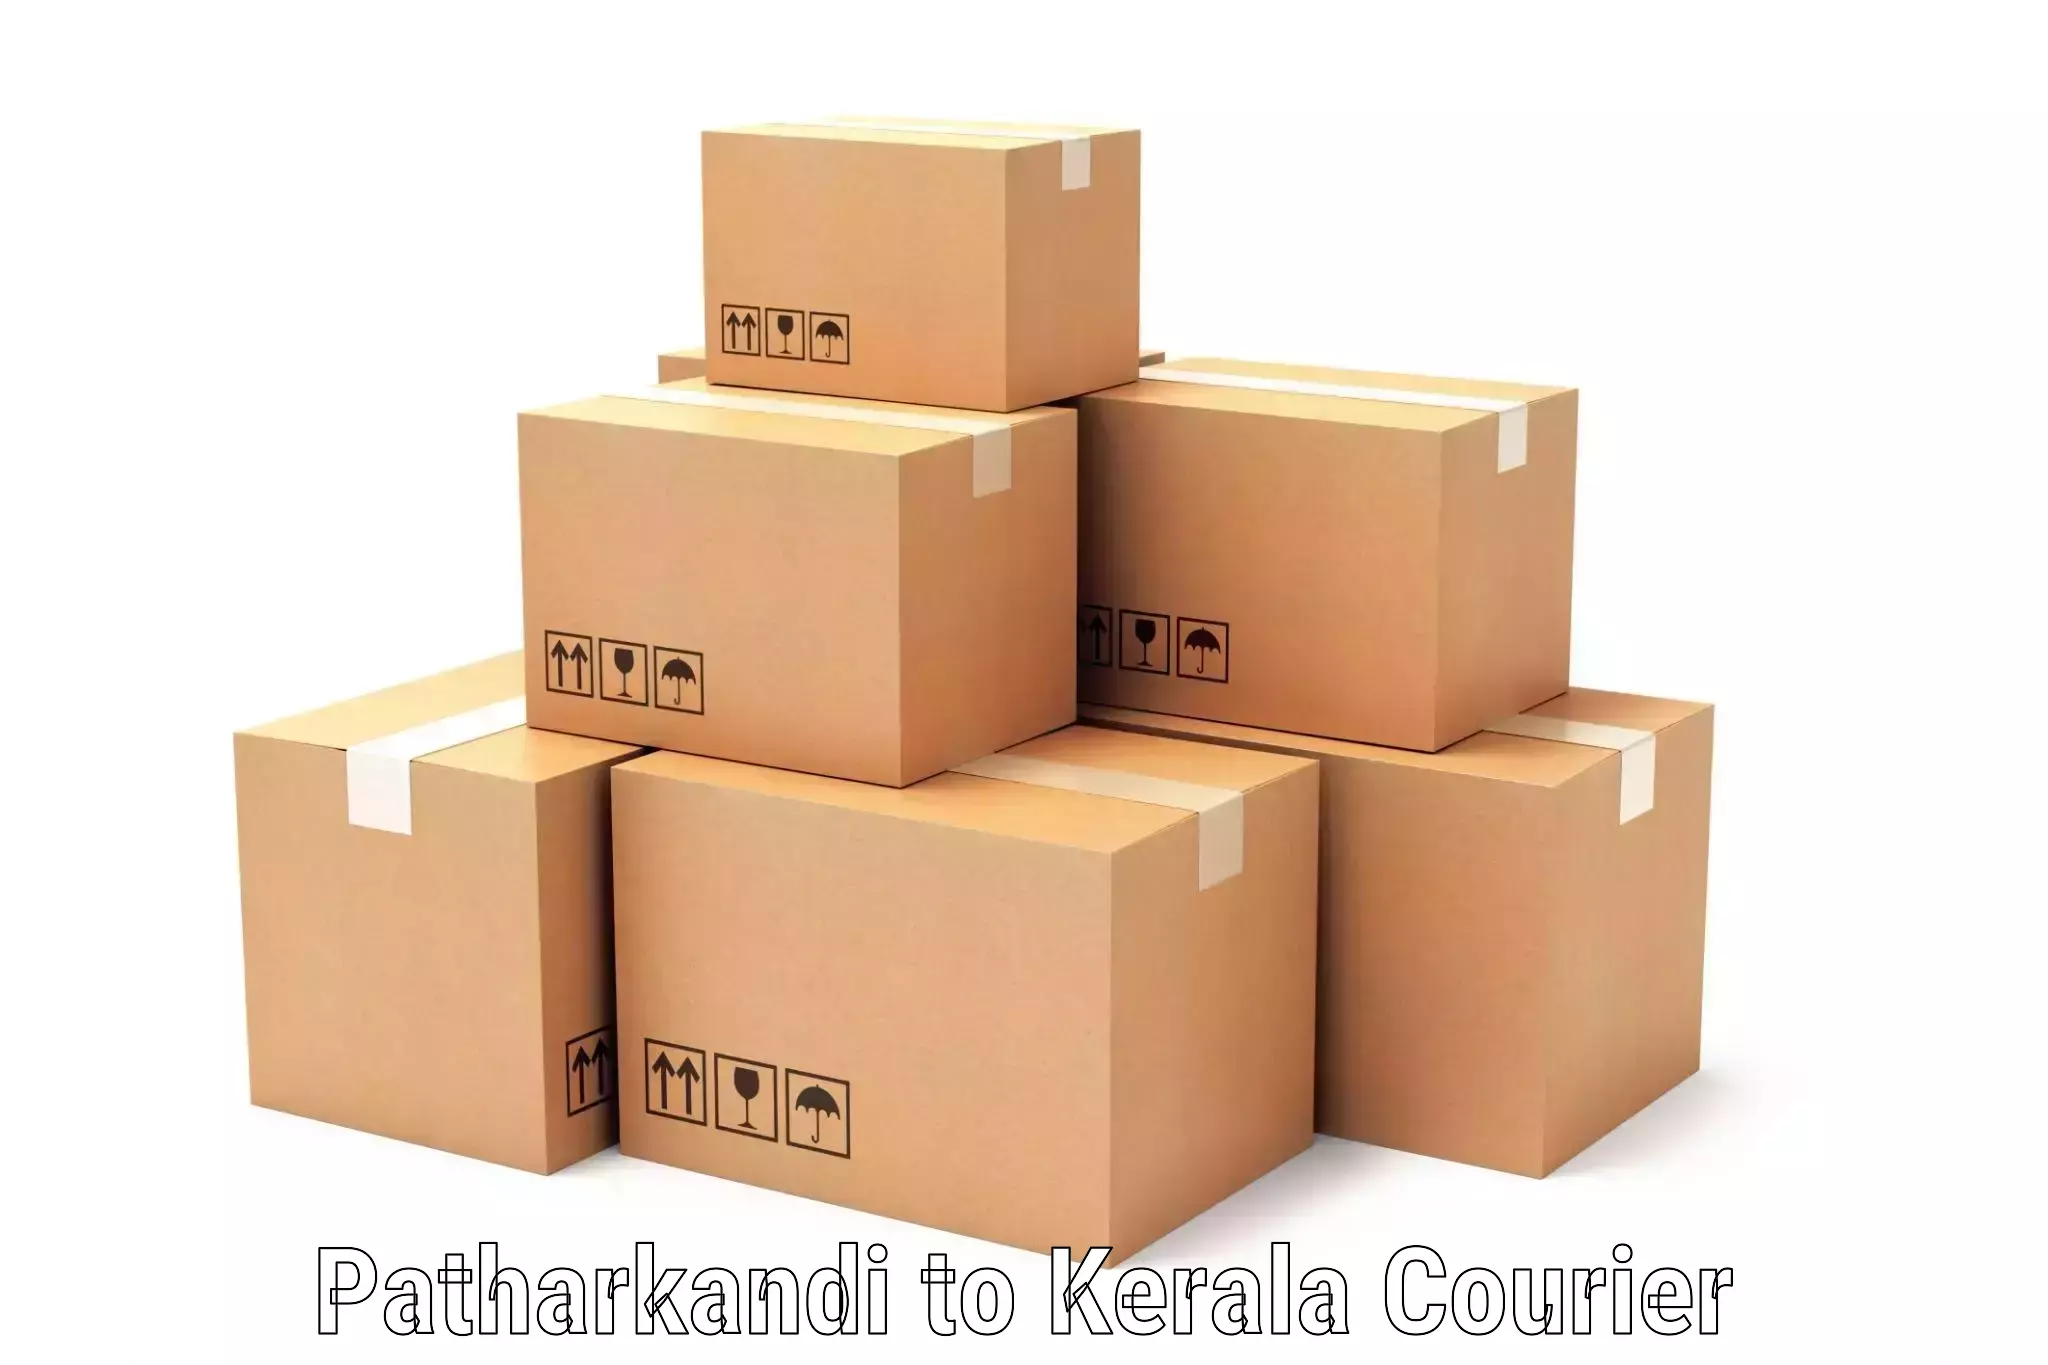 Express mail solutions Patharkandi to Cochin Port Kochi